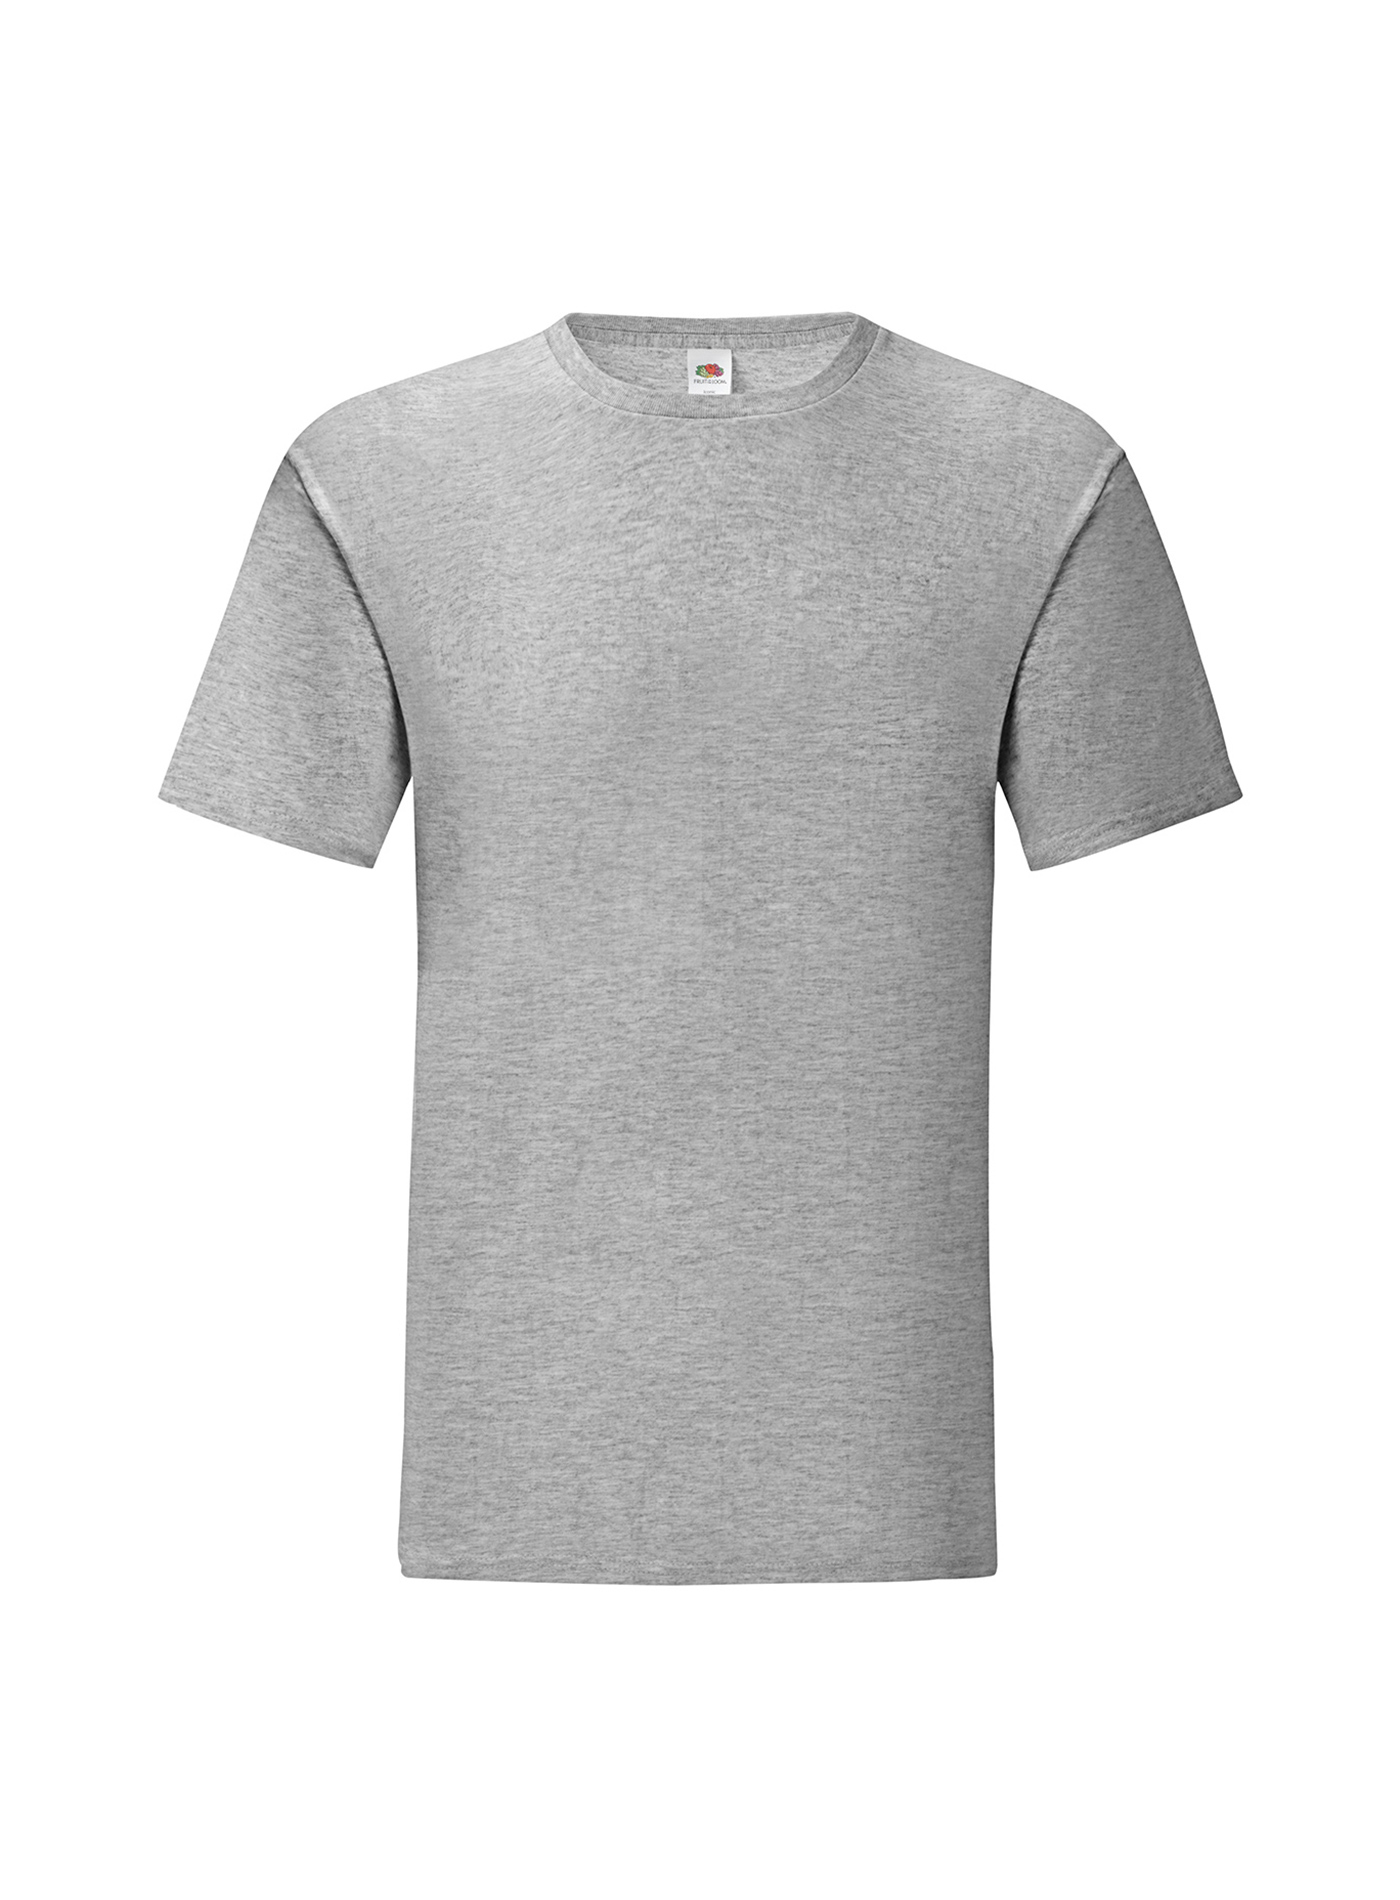 Pánské tričko Fruit of the Loom Iconic - šedý melír XL